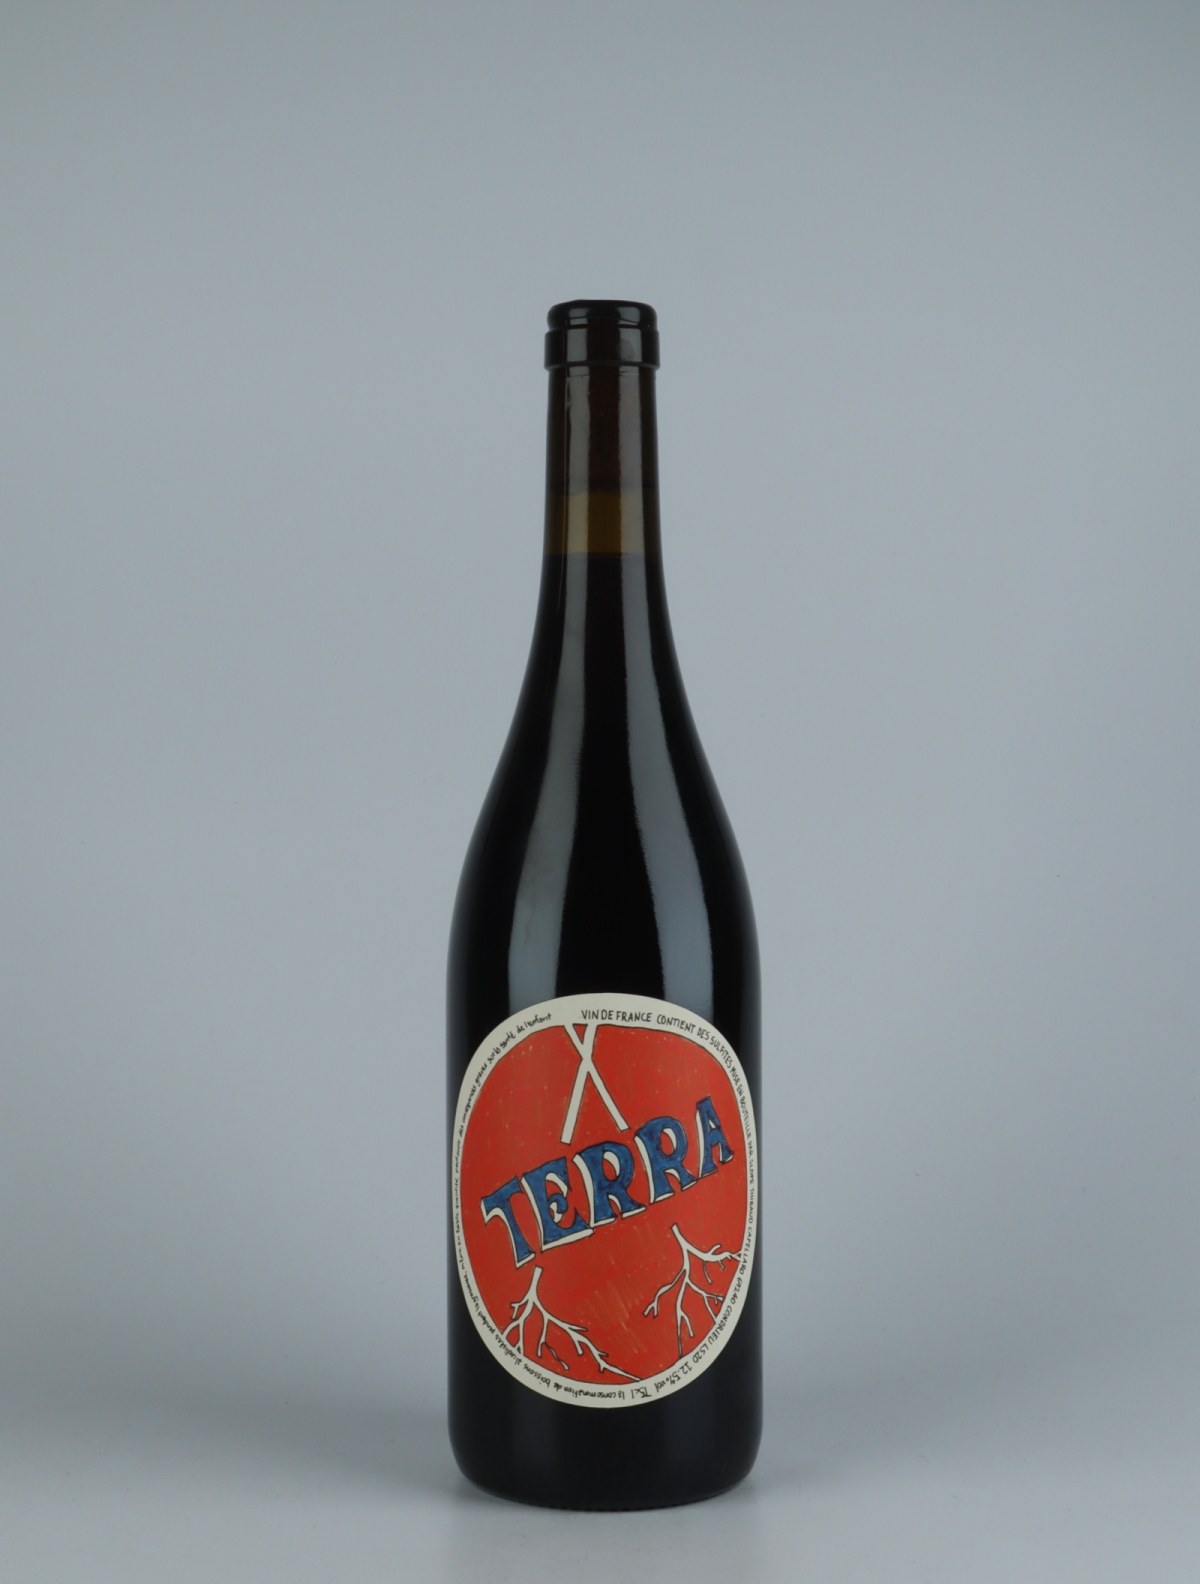 En flaske 2020 Terra Rødvin fra Slope, Rhône i Frankrig